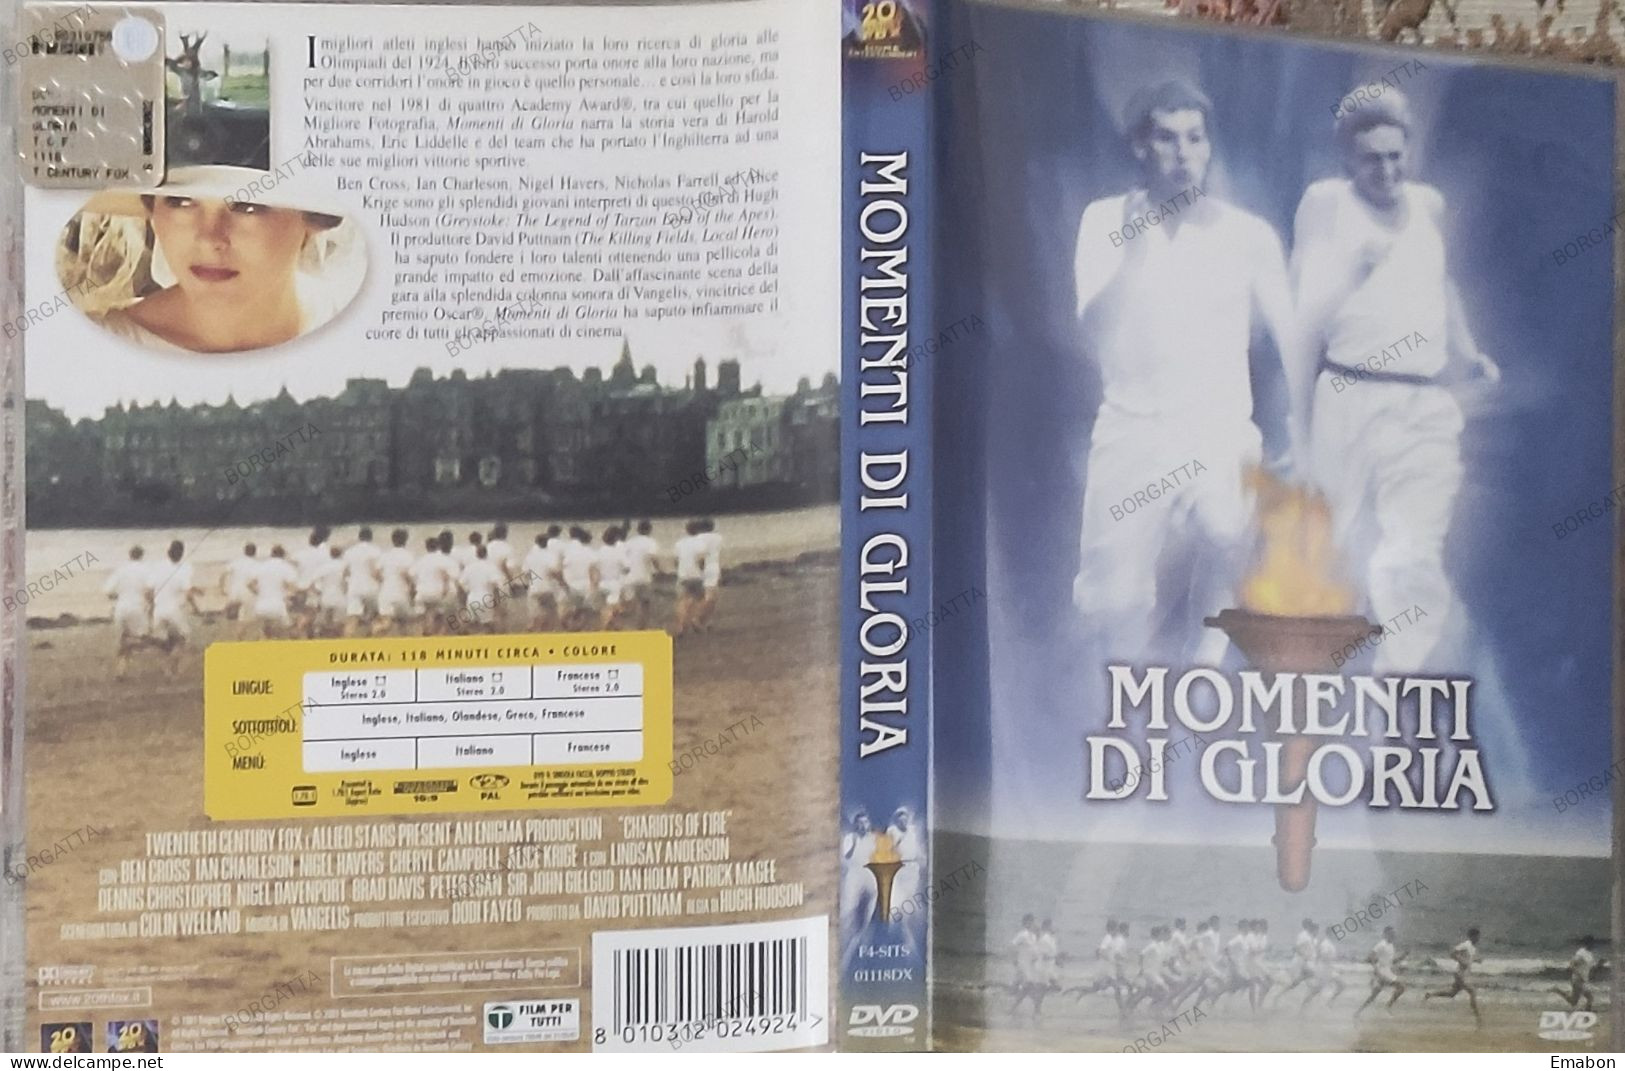 BORGATTA - DRAMMA - Dvd  " MOMENTI DI GLORIA  " HUGH HUDSON, BEN CROSS - PAL 2 - 20THFOX 2001 -  USATO In Buono Stato - Drame